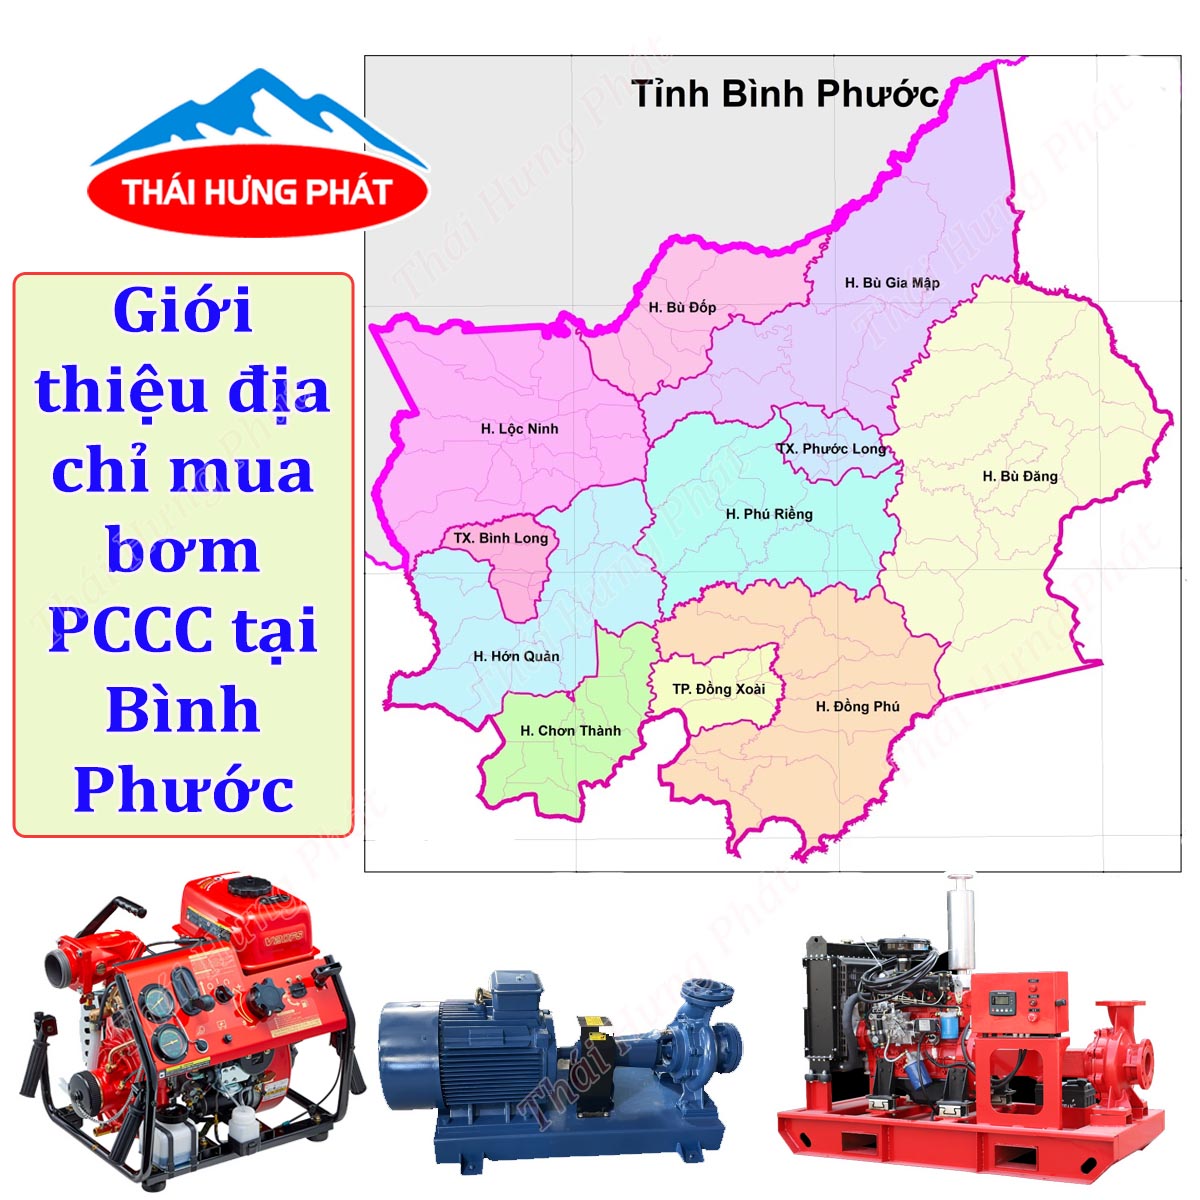 Công ty bán máy bơm PCCC chất lượng tại tỉnh Bình Phước